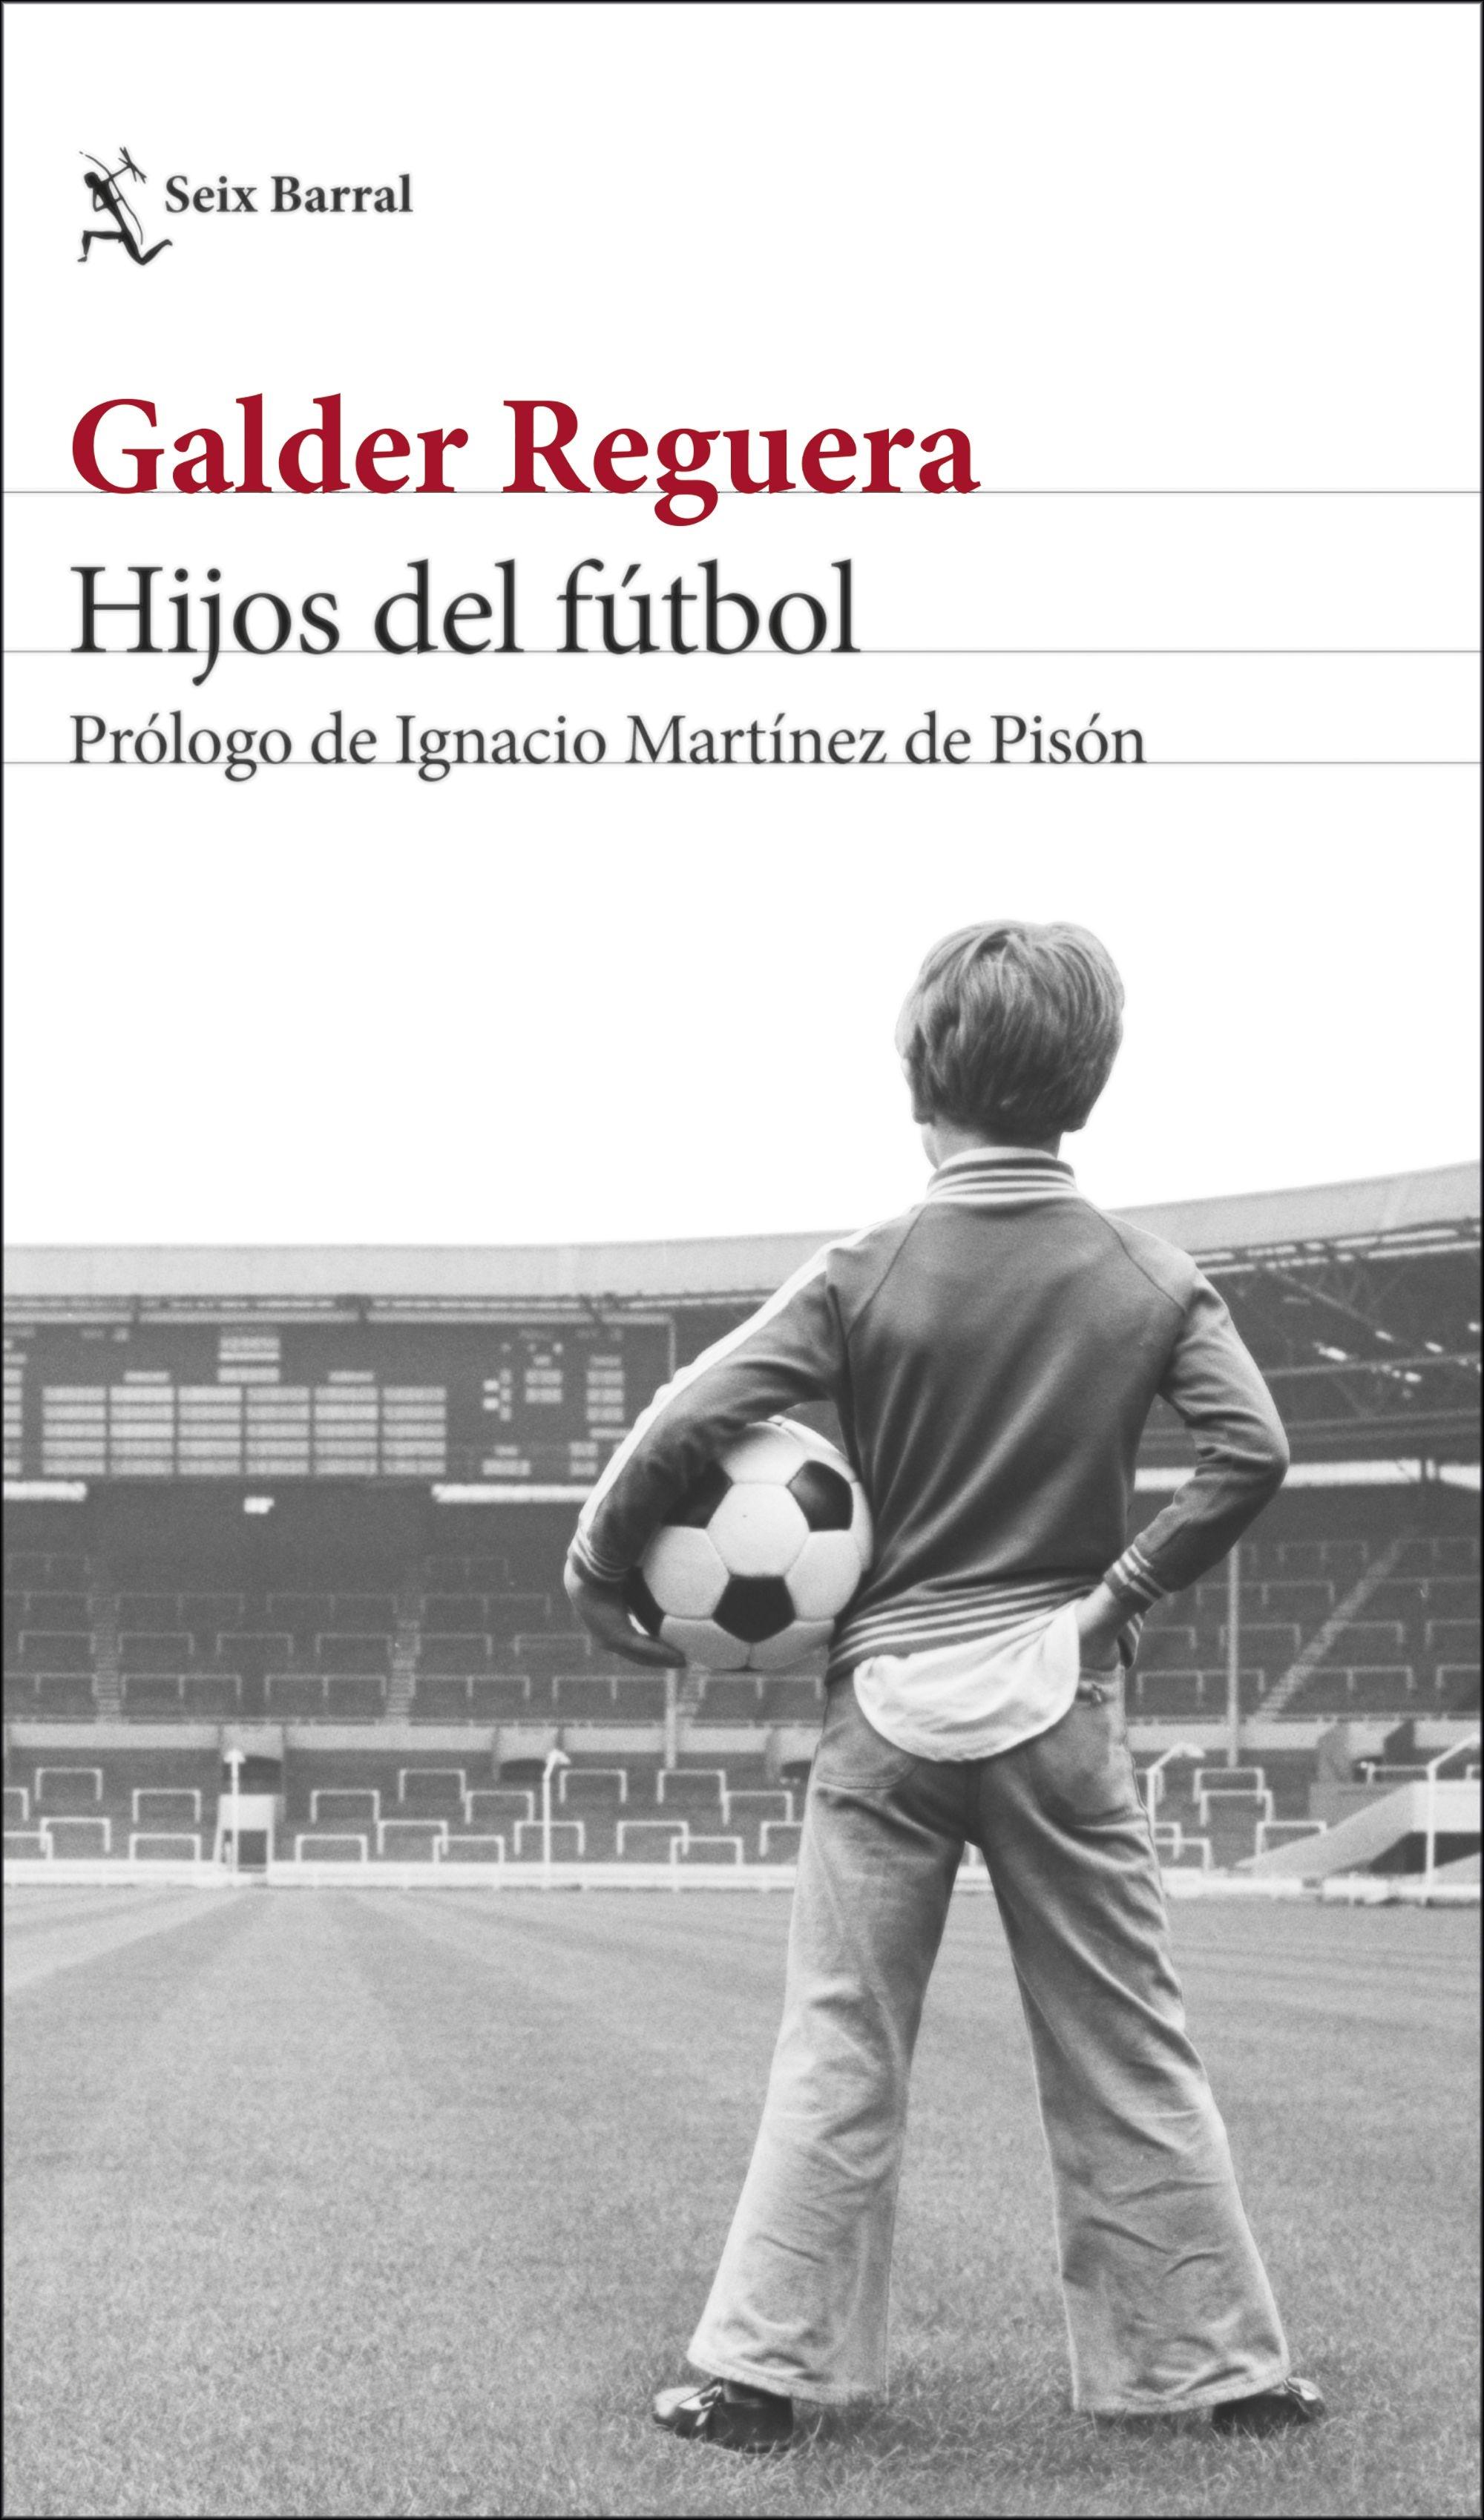 Hijos del Fútbol "Prólogo de Ignacio Martínez de Pisón". 